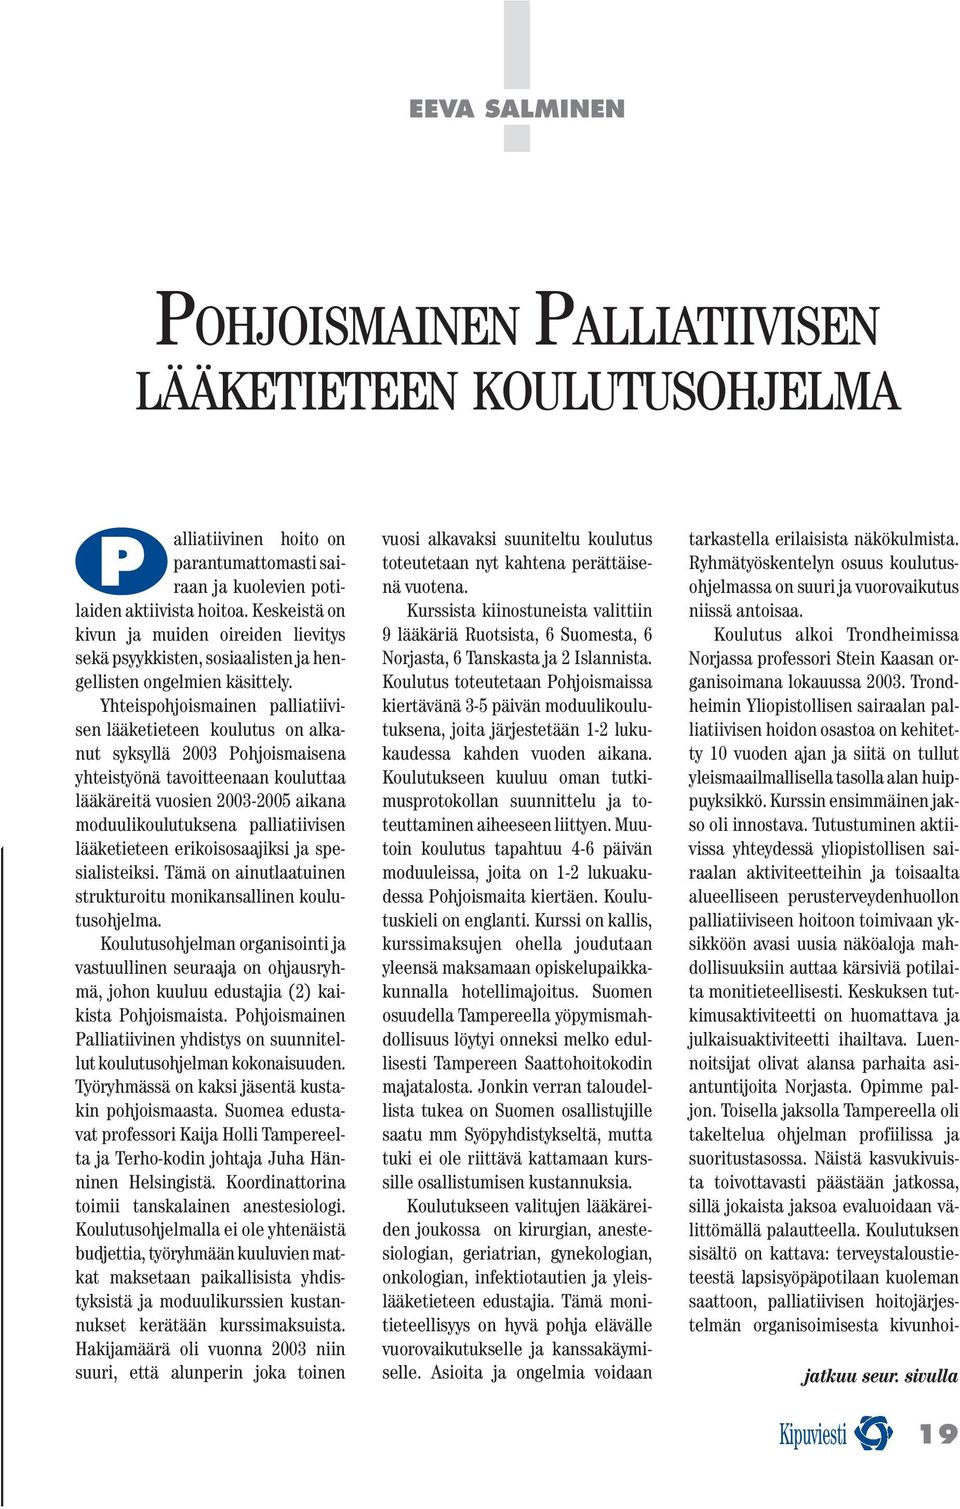 Yhteispohjoismainen palliatiivisen lääketieteen koulutus on alkanut syksyllä 2003 Pohjoismaisena yhteistyönä tavoitteenaan kouluttaa lääkäreitä vuosien 2003-2005 aikana moduulikoulutuksena